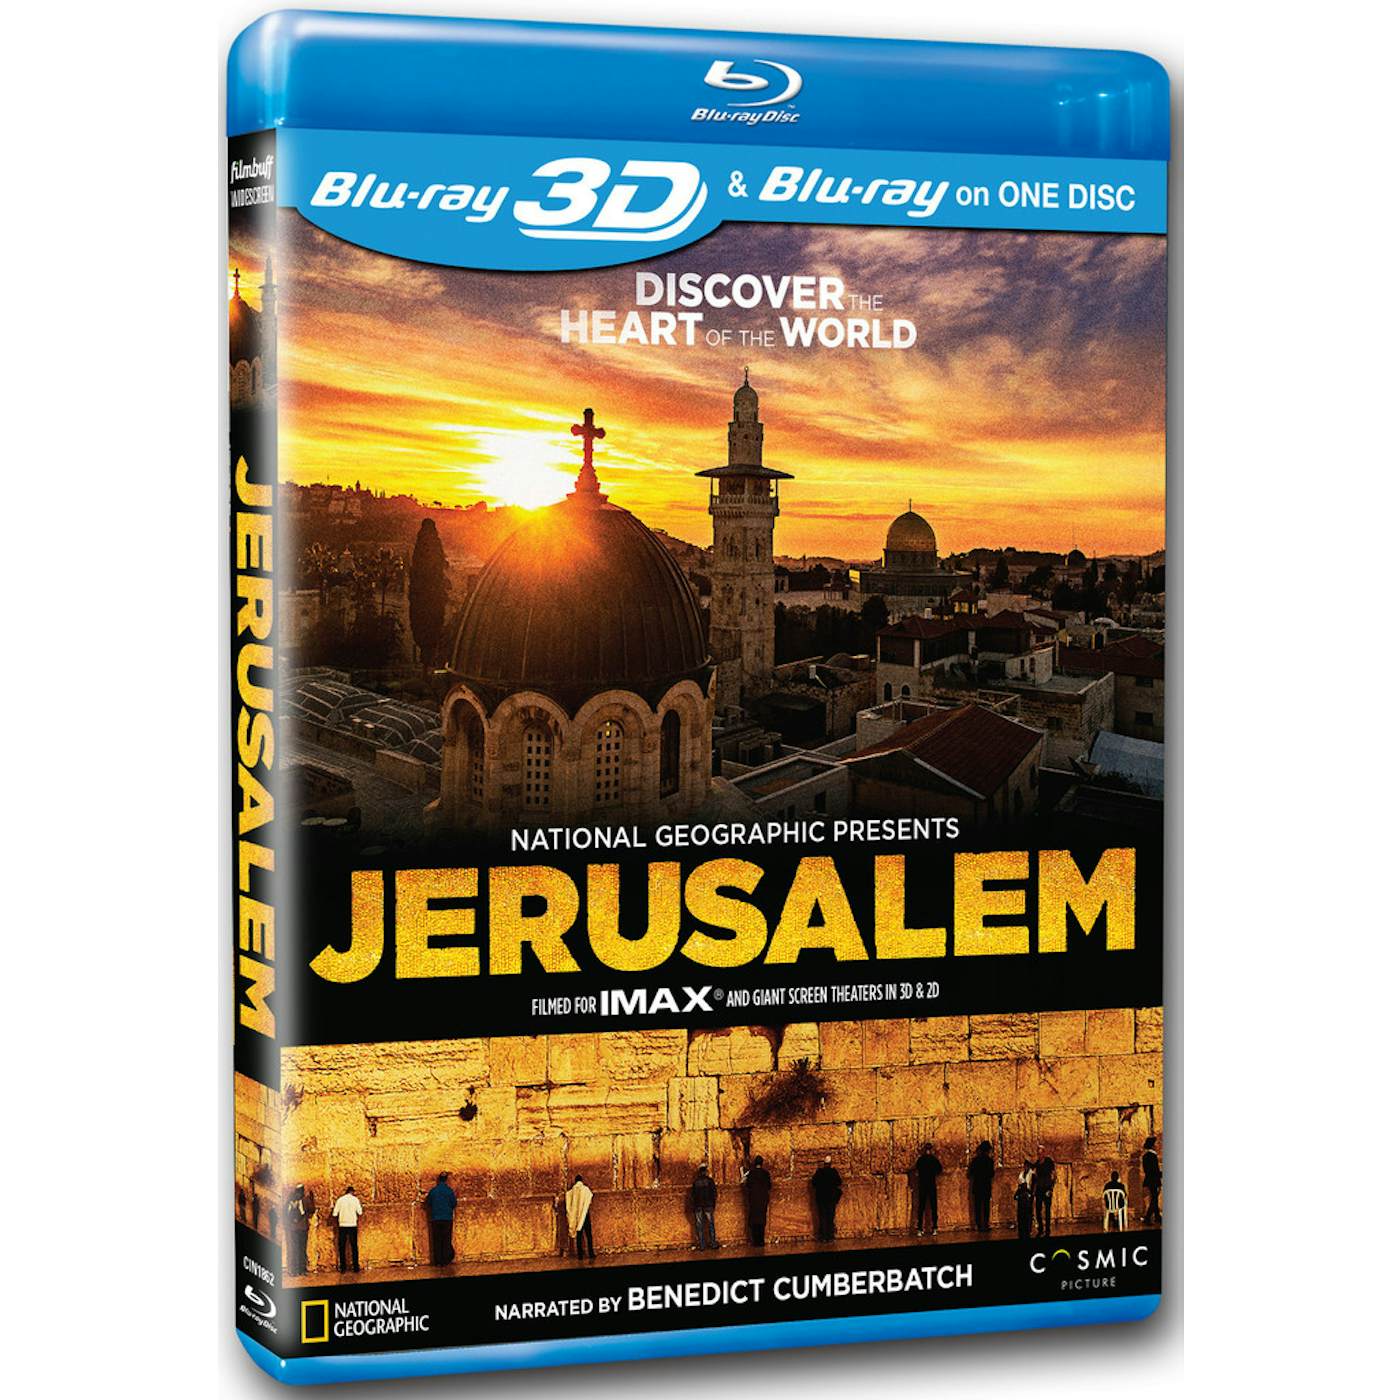 JERUSALEM Blu-ray